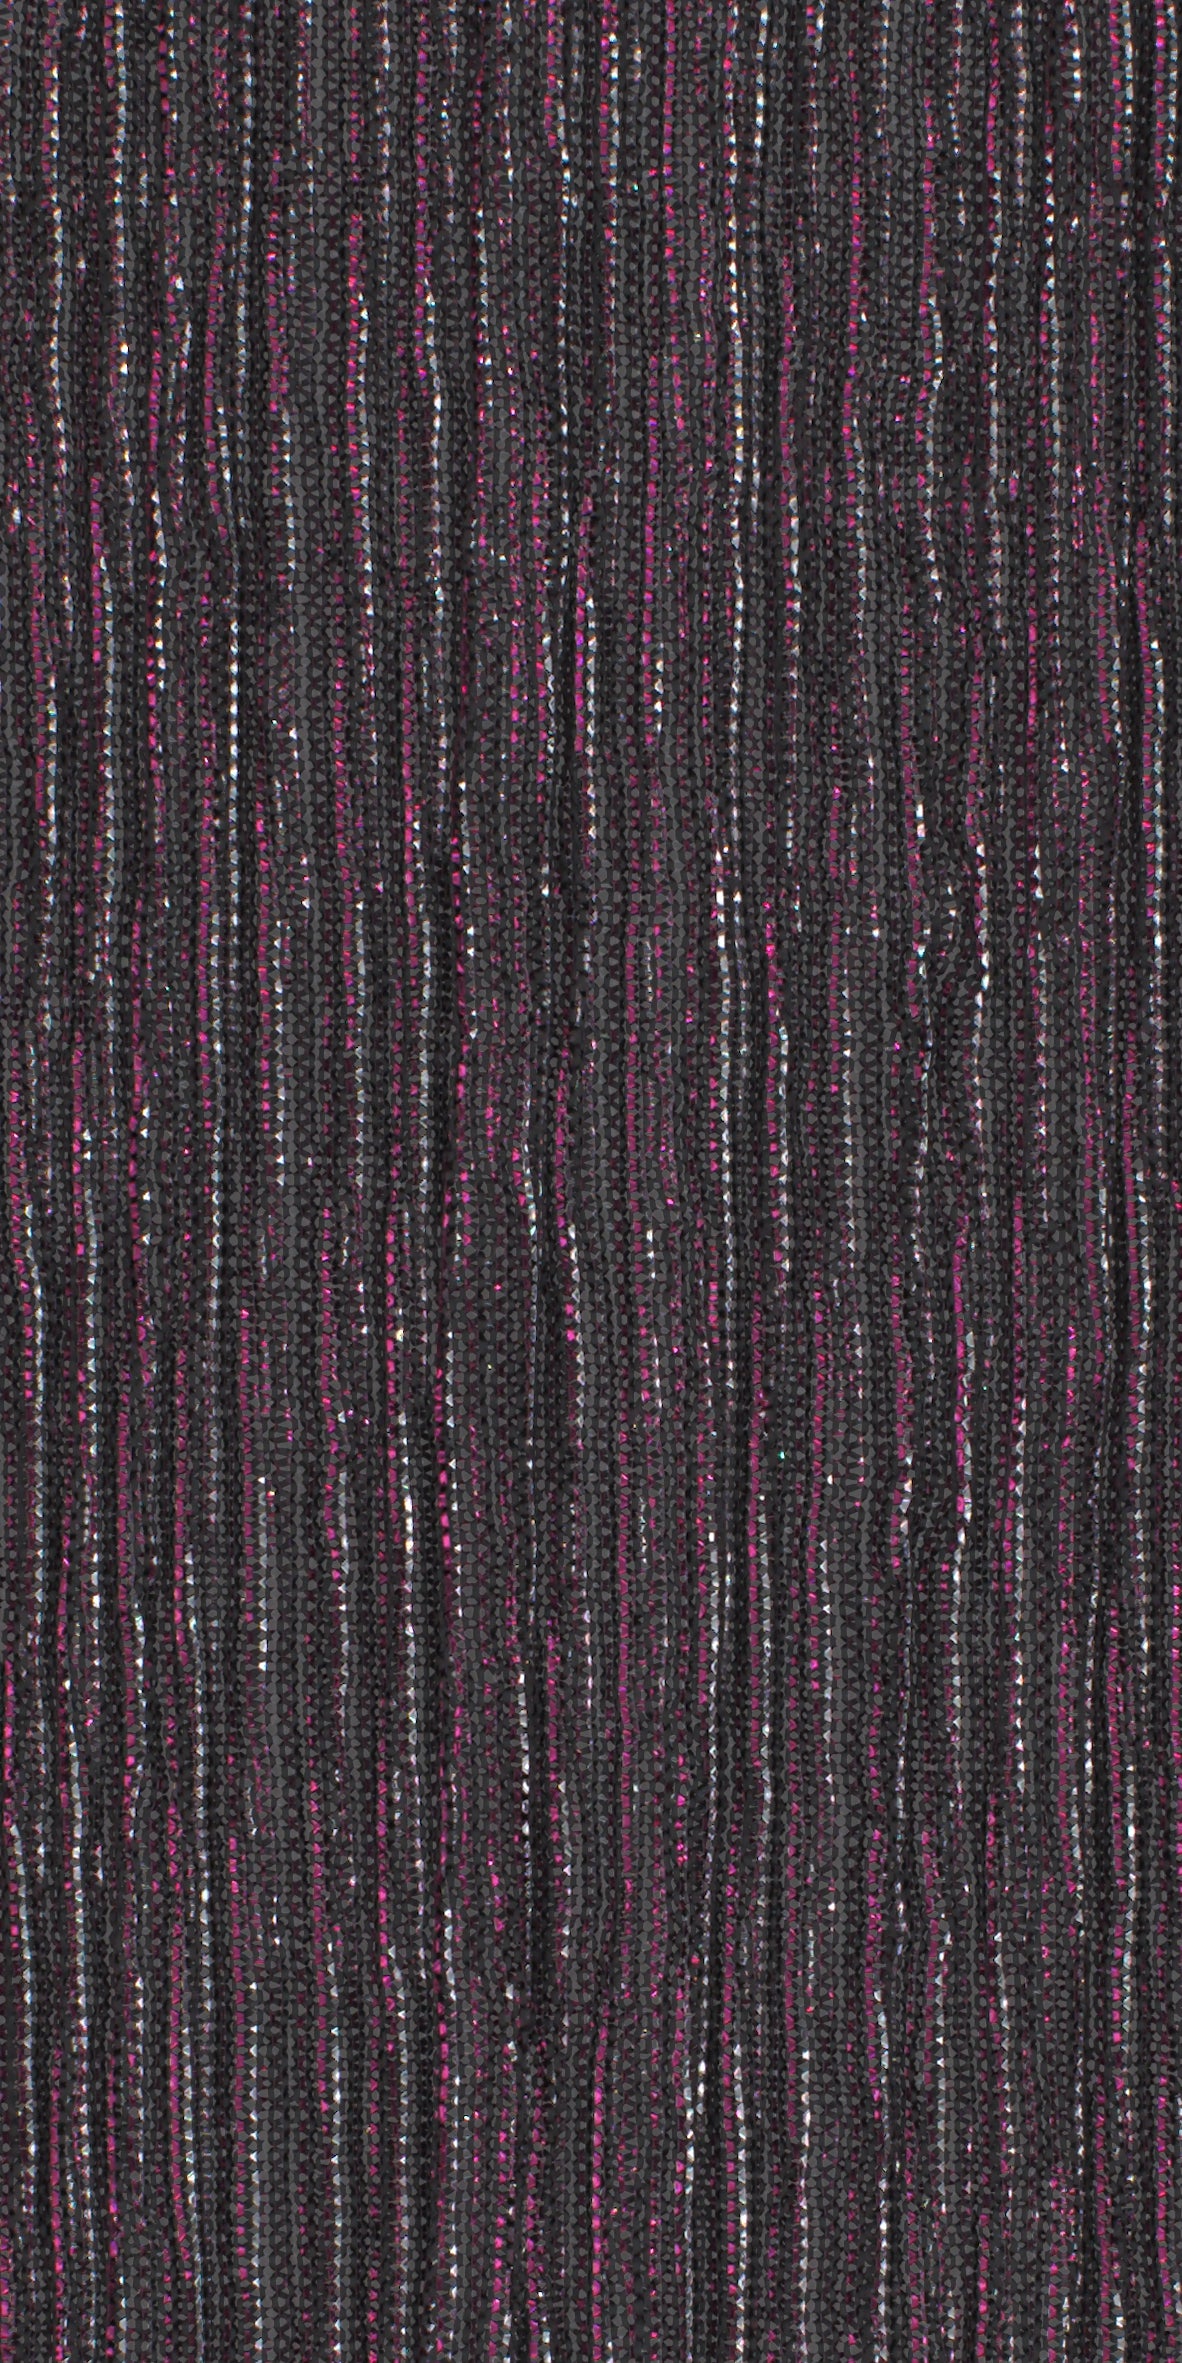 12006-06 Silver Fuchsia Metallic Pleat Plain Dyed Blend 126g/yd 56" blend knit metallic pink plain dyed pleat ppl new silver Metallic, Pleat - knit fabric - woven fabric - fabric company - fabric wholesale - fabric b2b - fabric factory - high quality fabric - hong kong fabric - fabric hk - acetate fabric - cotton fabric - linen fabric - metallic fabric - nylon fabric - polyester fabric - spandex fabric - chun wing hing - cwh hk - fabric worldwide ship - 針織布 - 梳織布 - 布料公司- 布料批發 - 香港布料 - 秦榮興